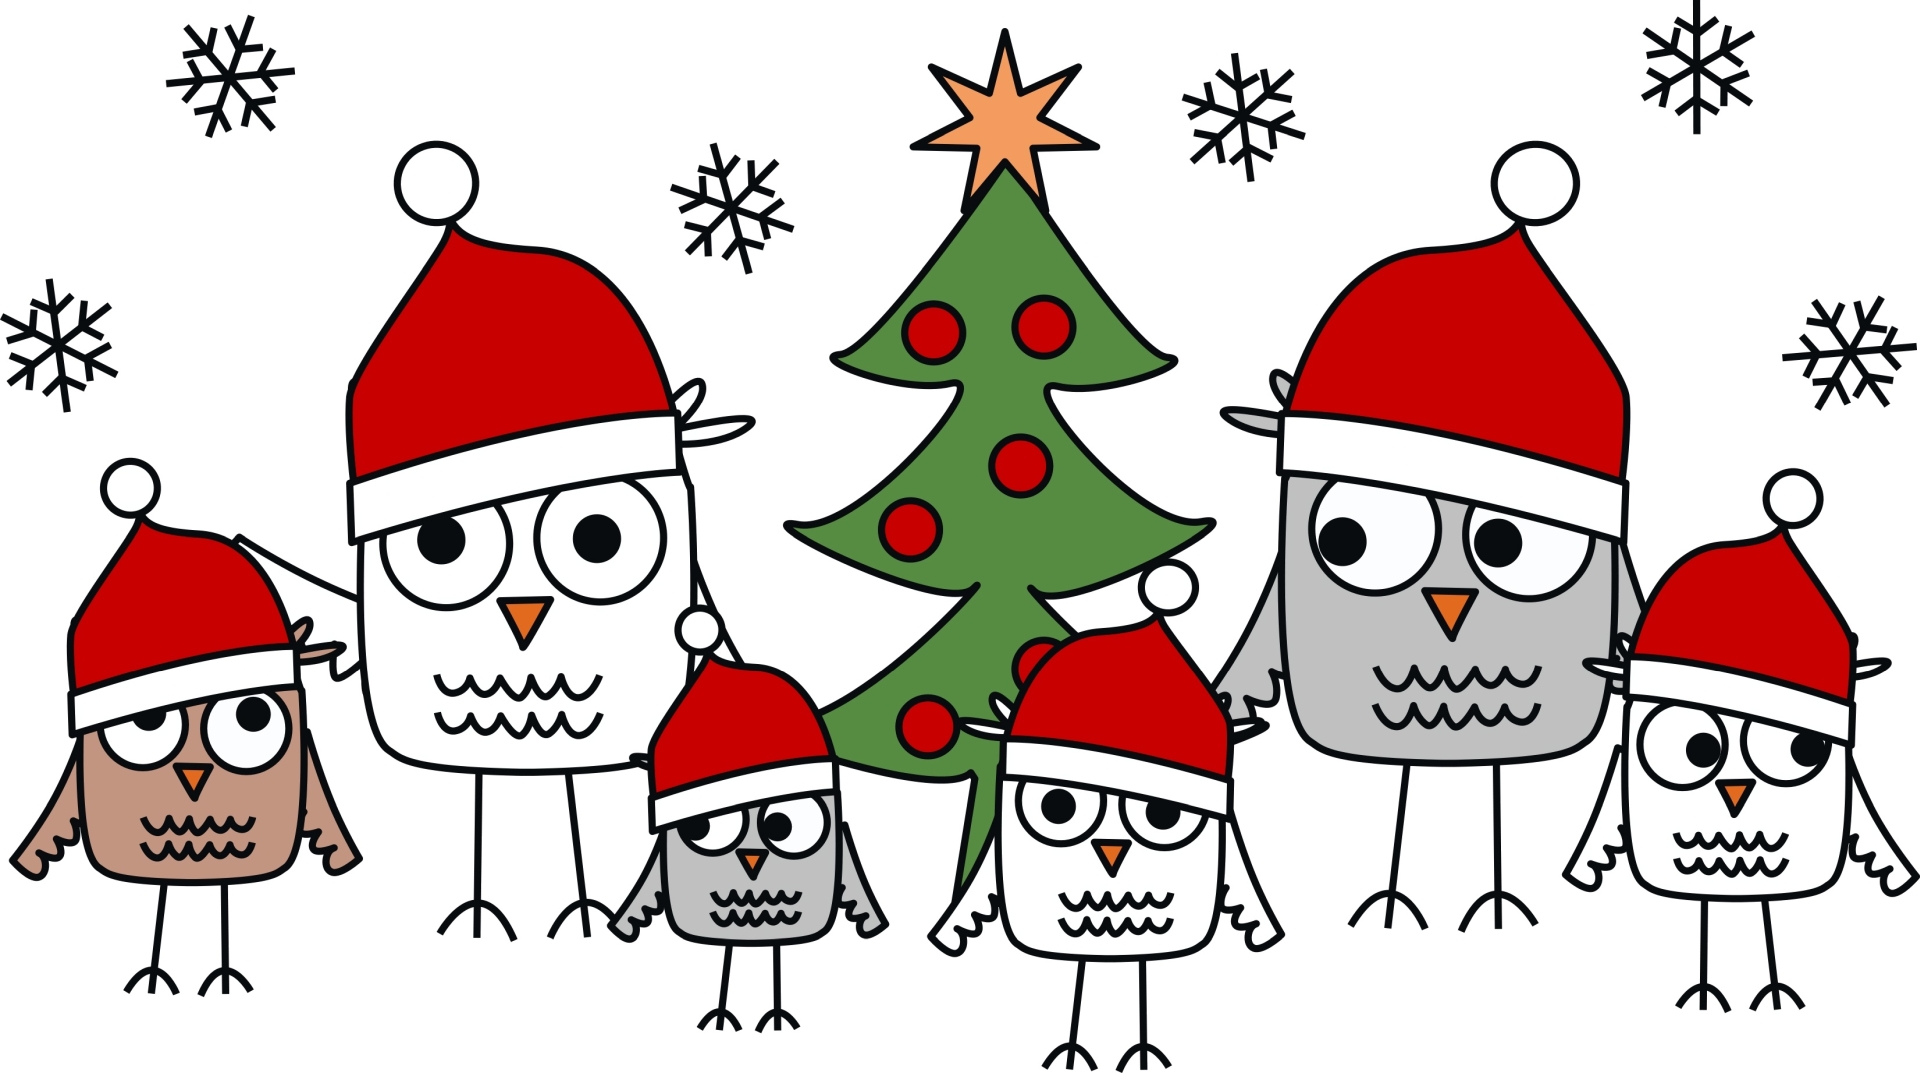 Bunte Zeichnung von zwei großen und vier kleinen Eulen mit roten Mützen und Weihnachtsbaum